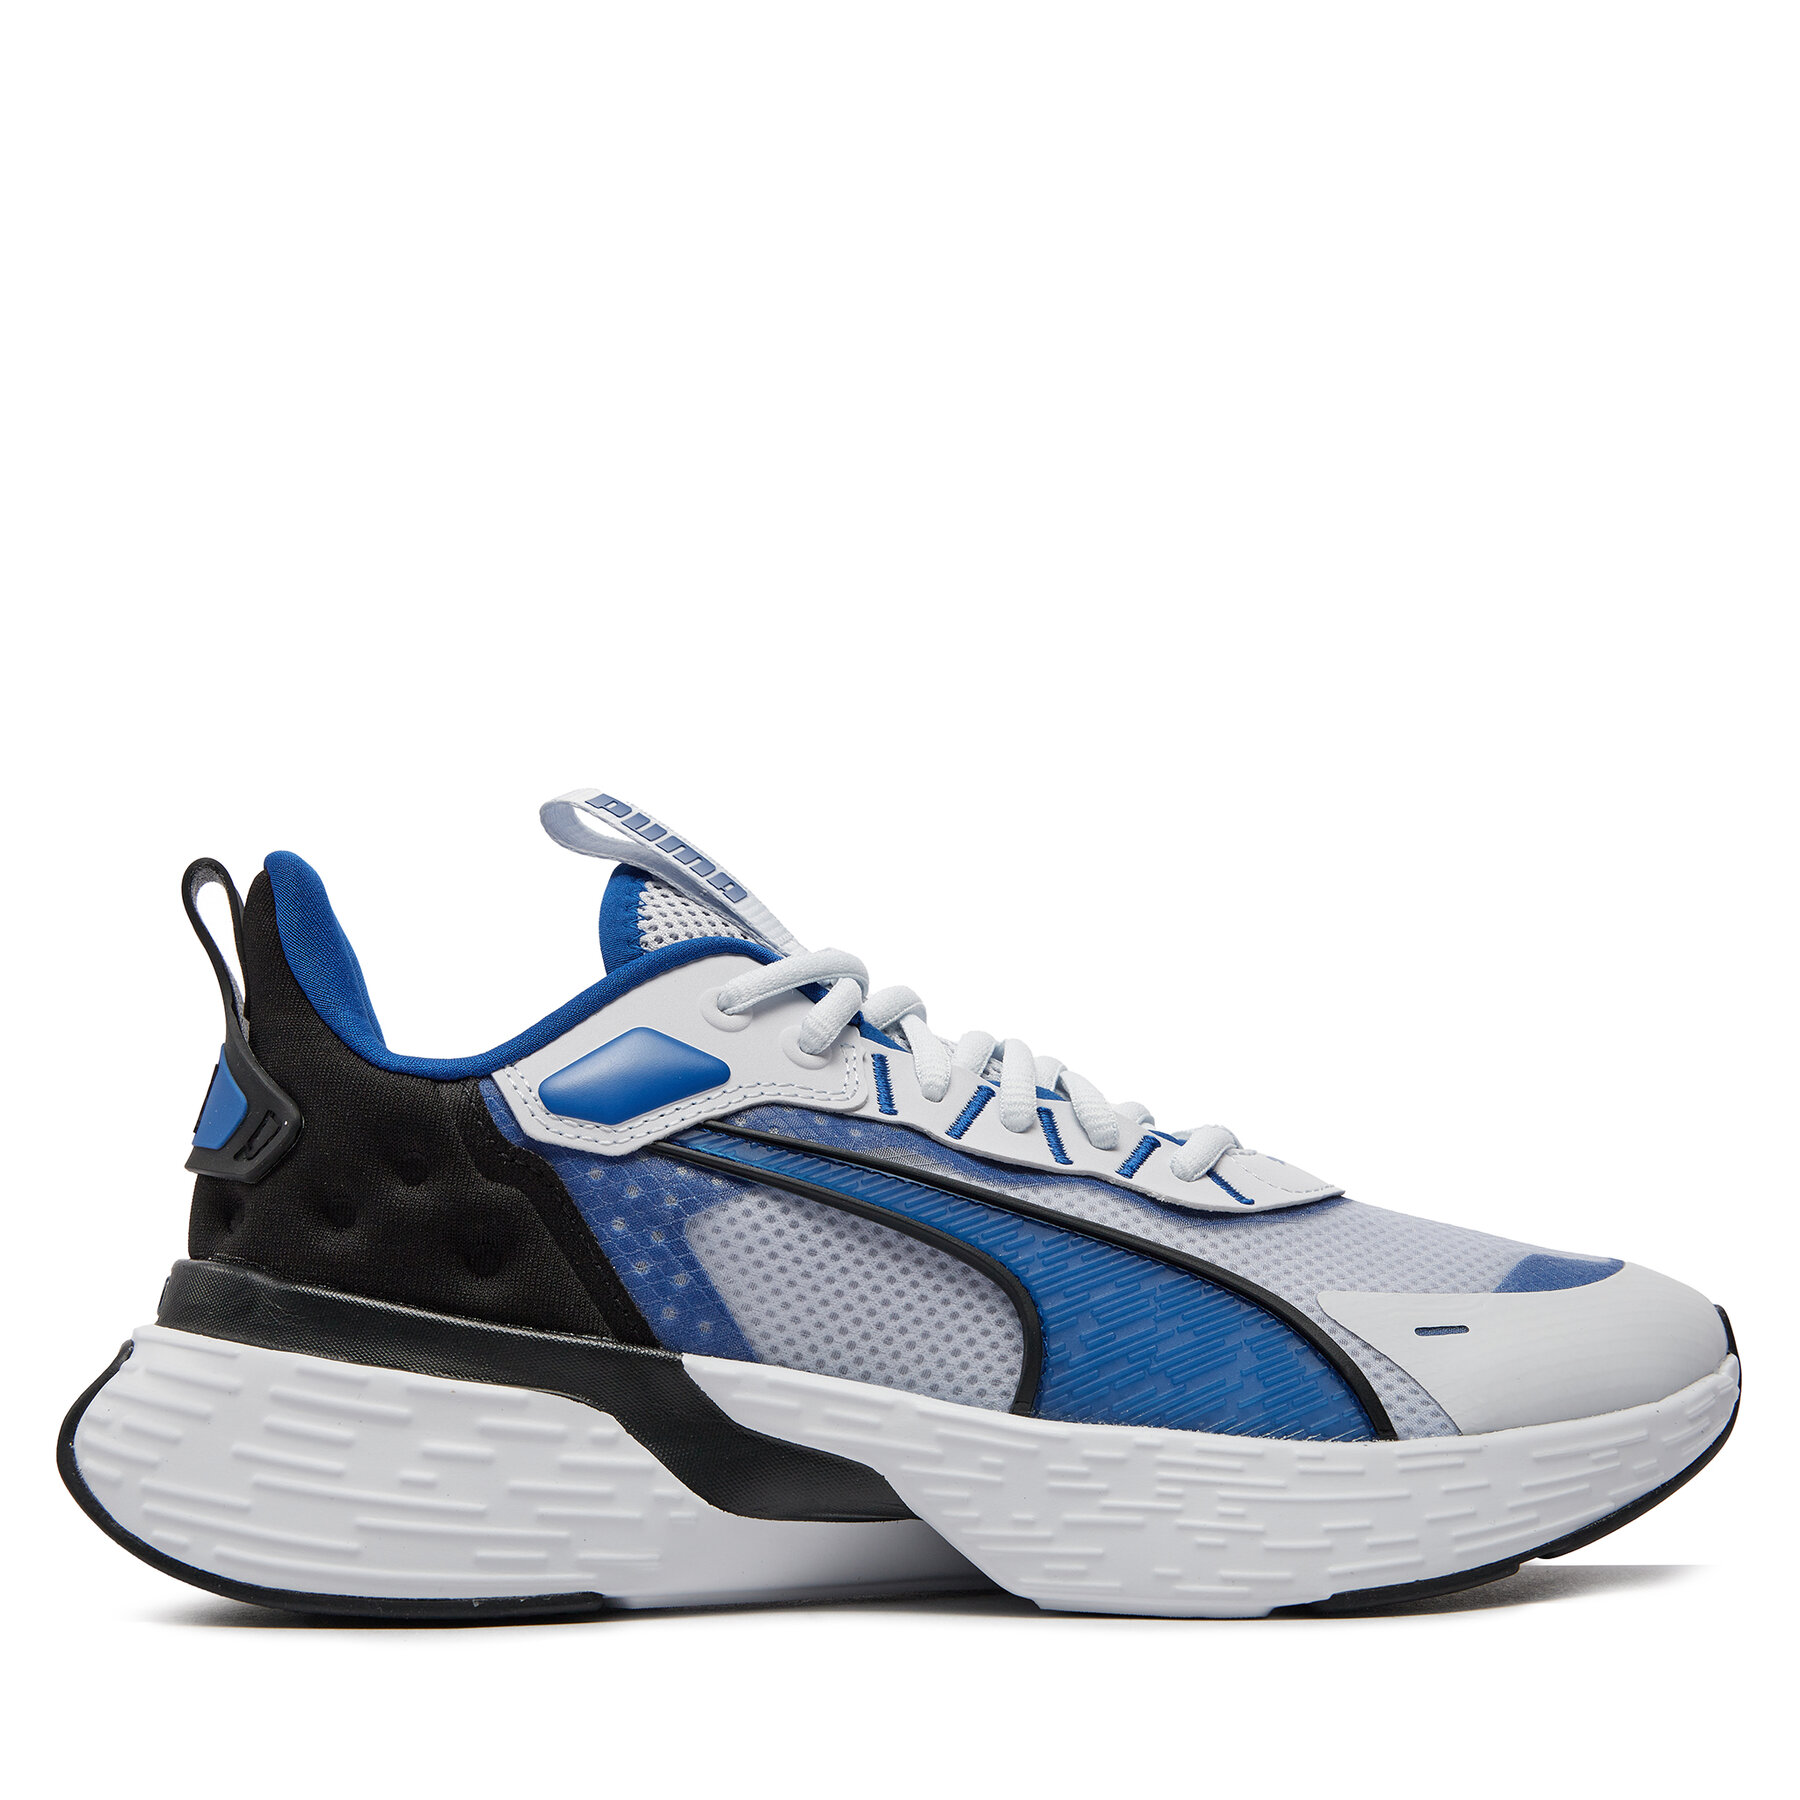 Sneakers Puma Softride Sway Running Shoes 379443 02 Silver Mist/Cobalt Glaze von Puma